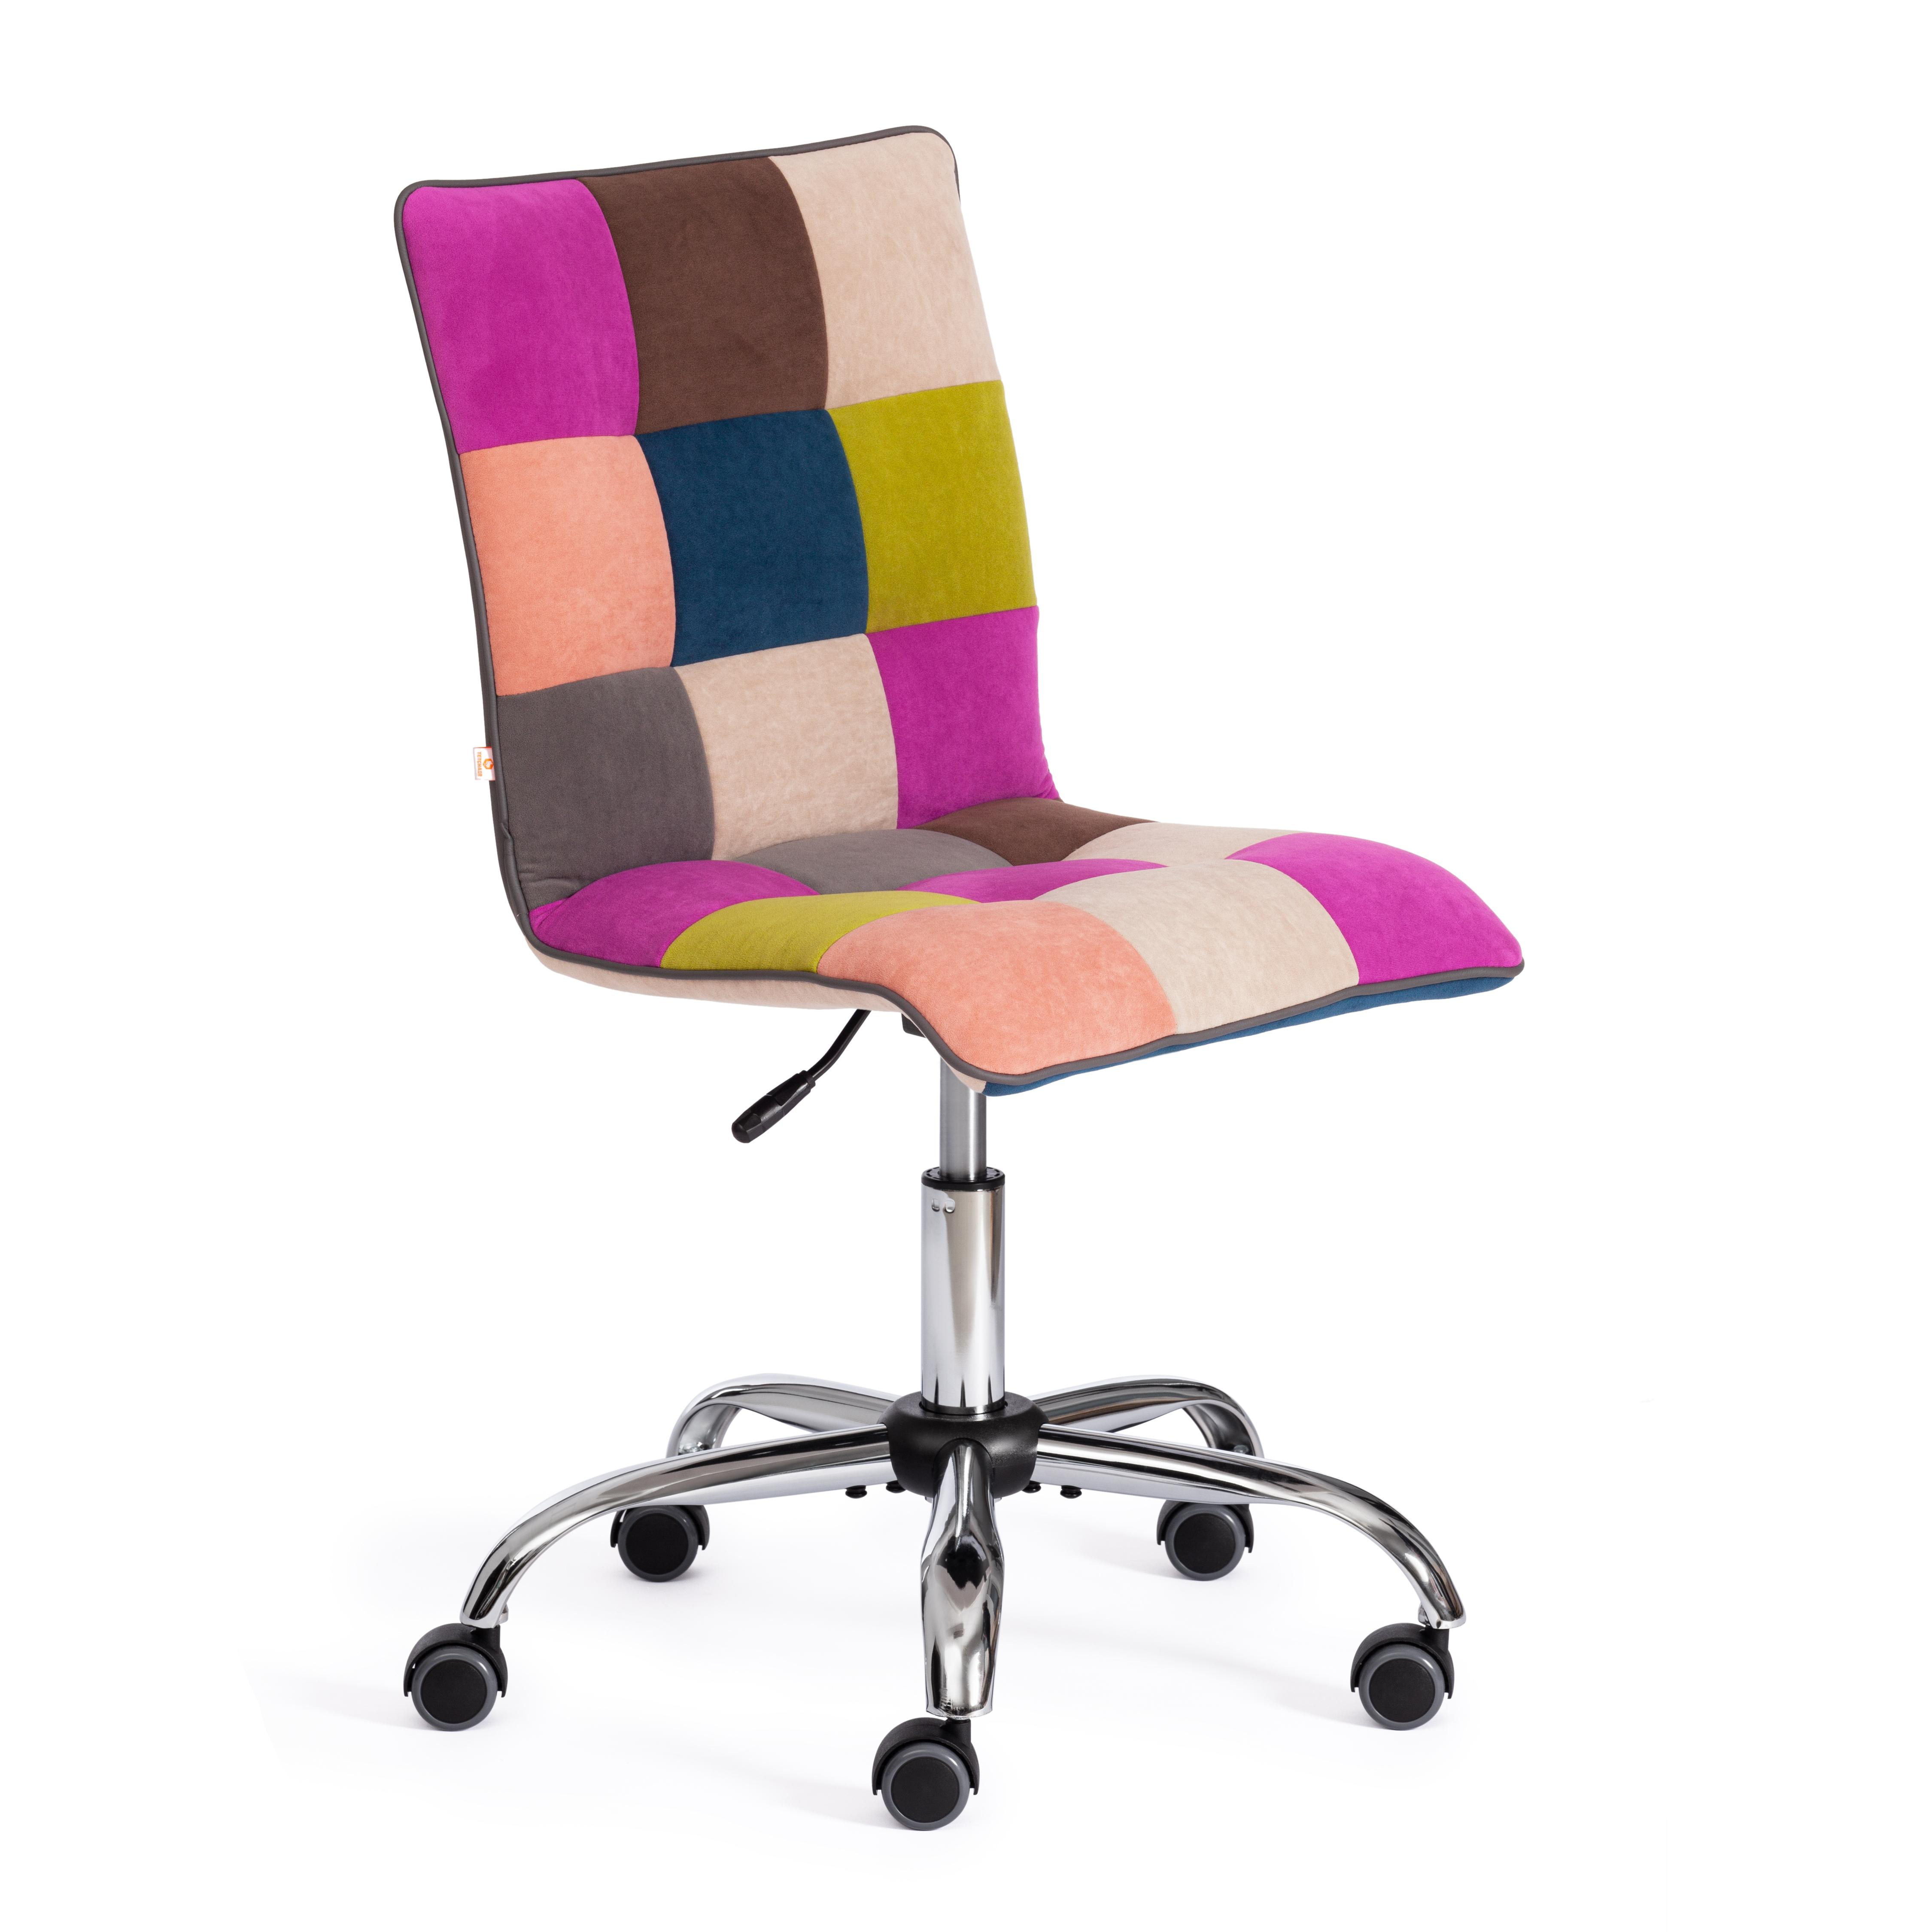 Кресло ZERO (спектр) ткань, флок, цветной